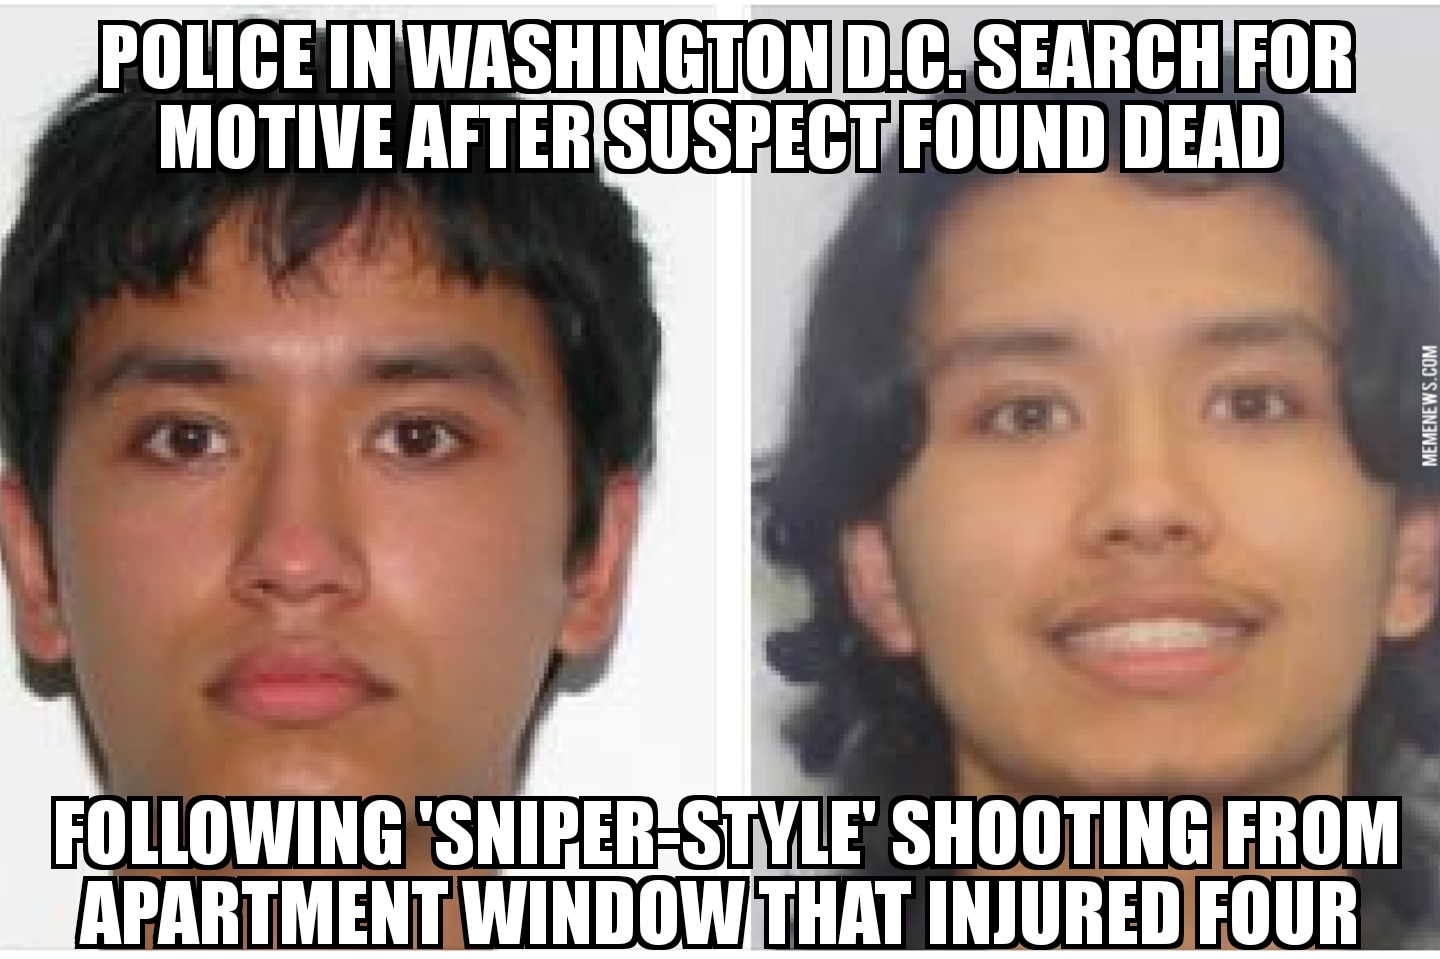 D.C. sniper shooting